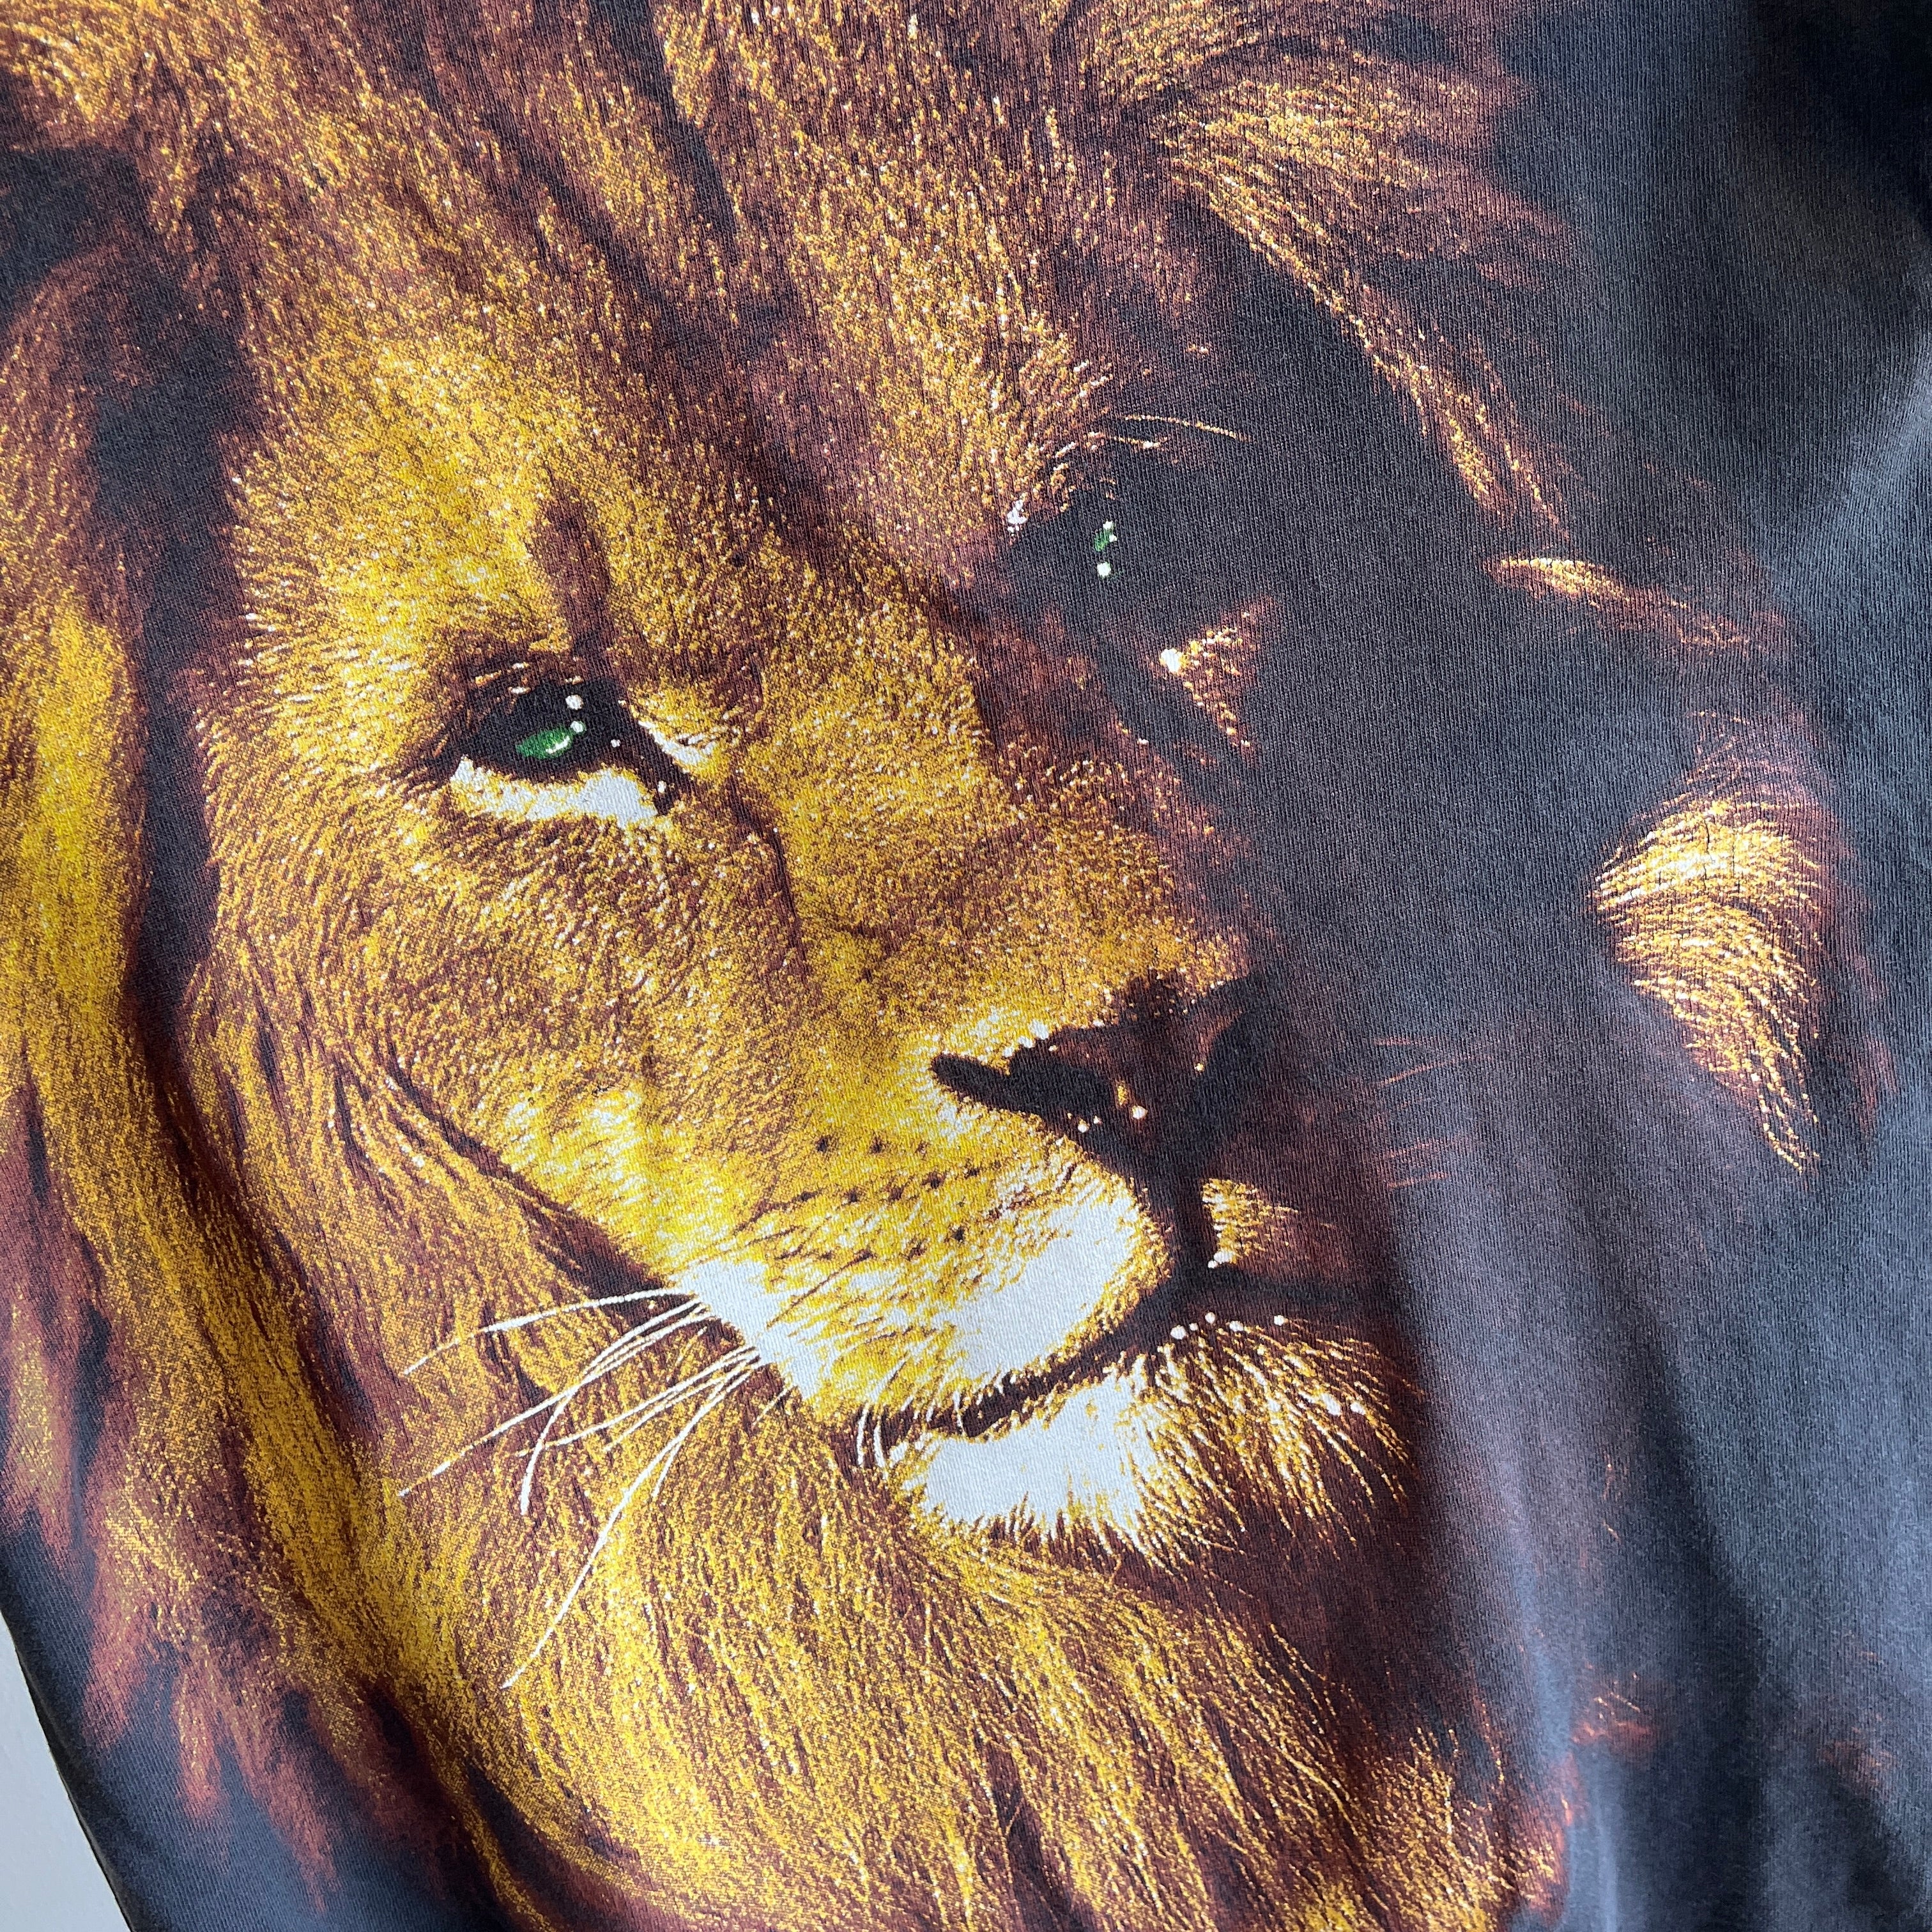 T-shirt délavé et usé à tête de lion géant de la Fédération de la vie sauvage des années 1990